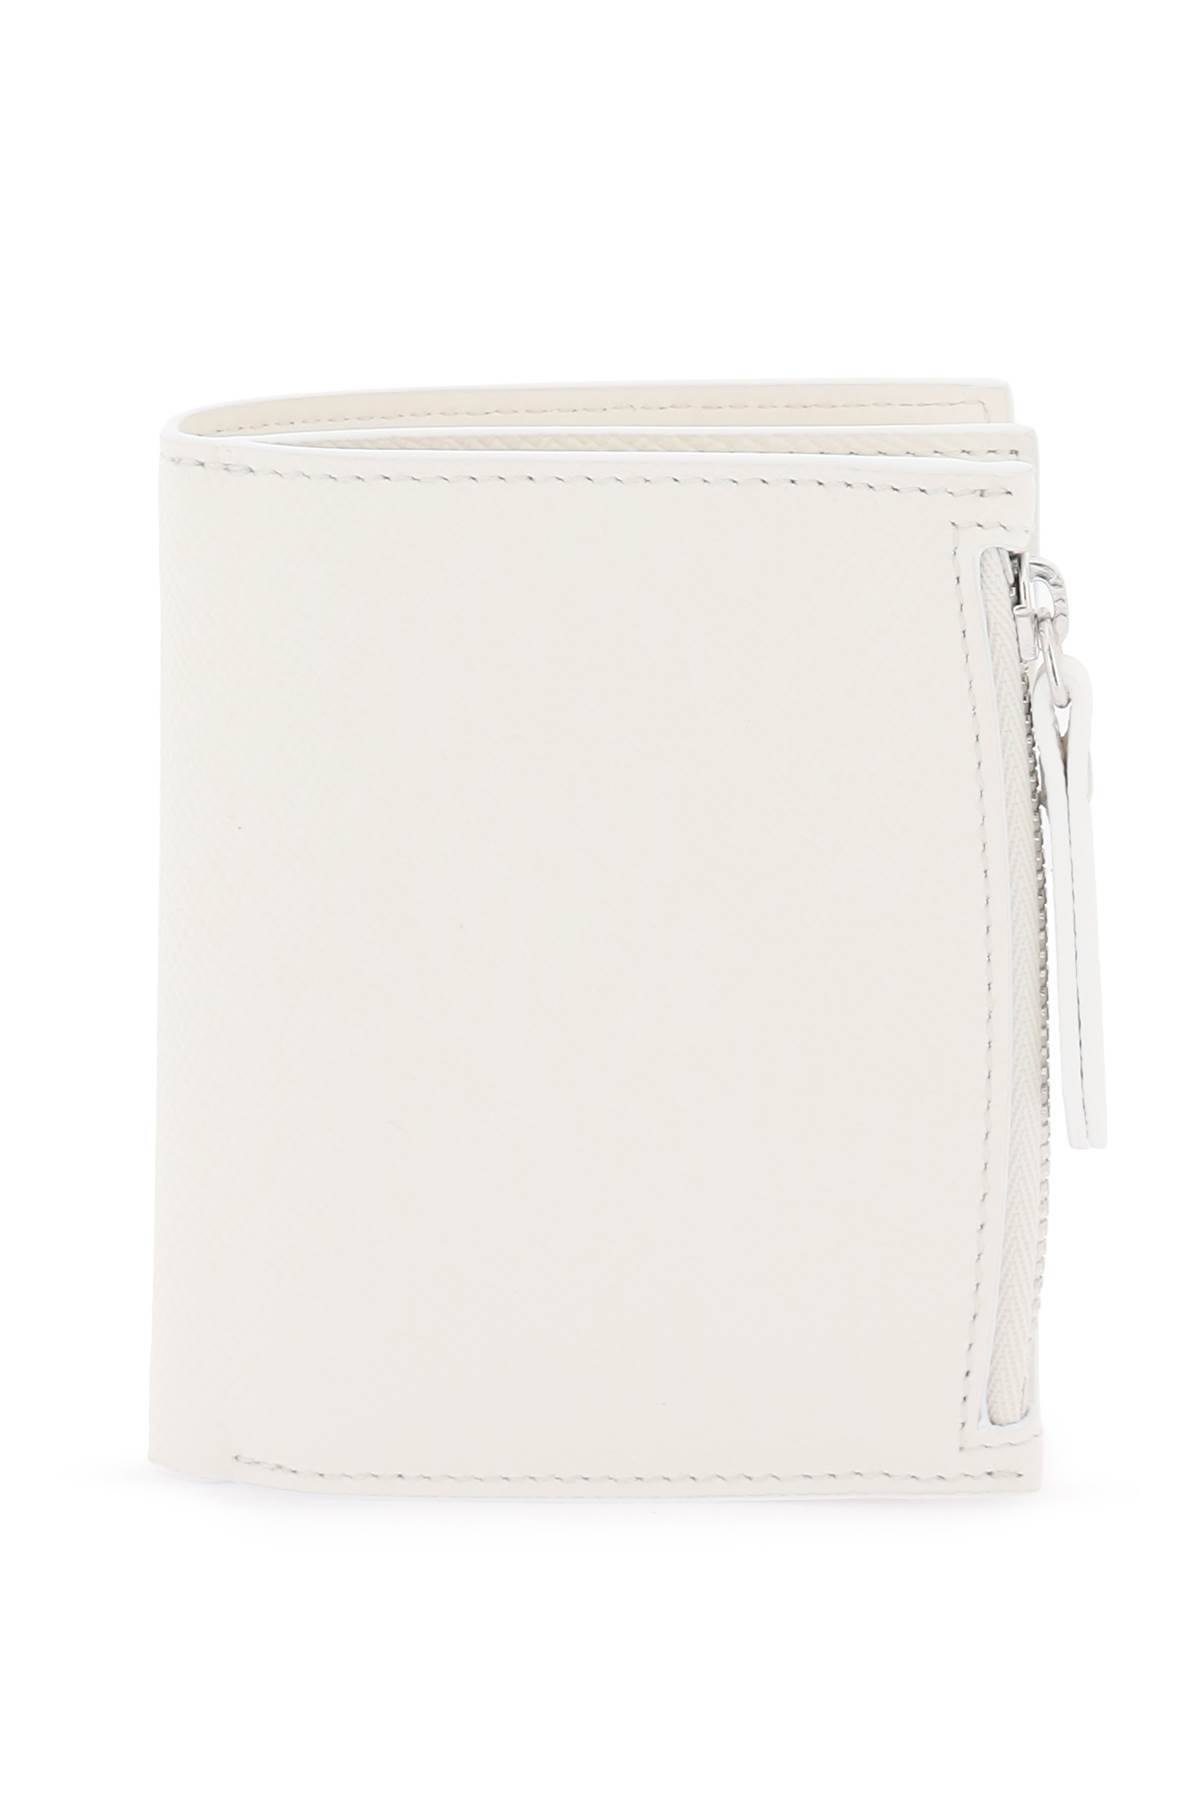 Maison Margiela 'four Stitches' Wallet In White